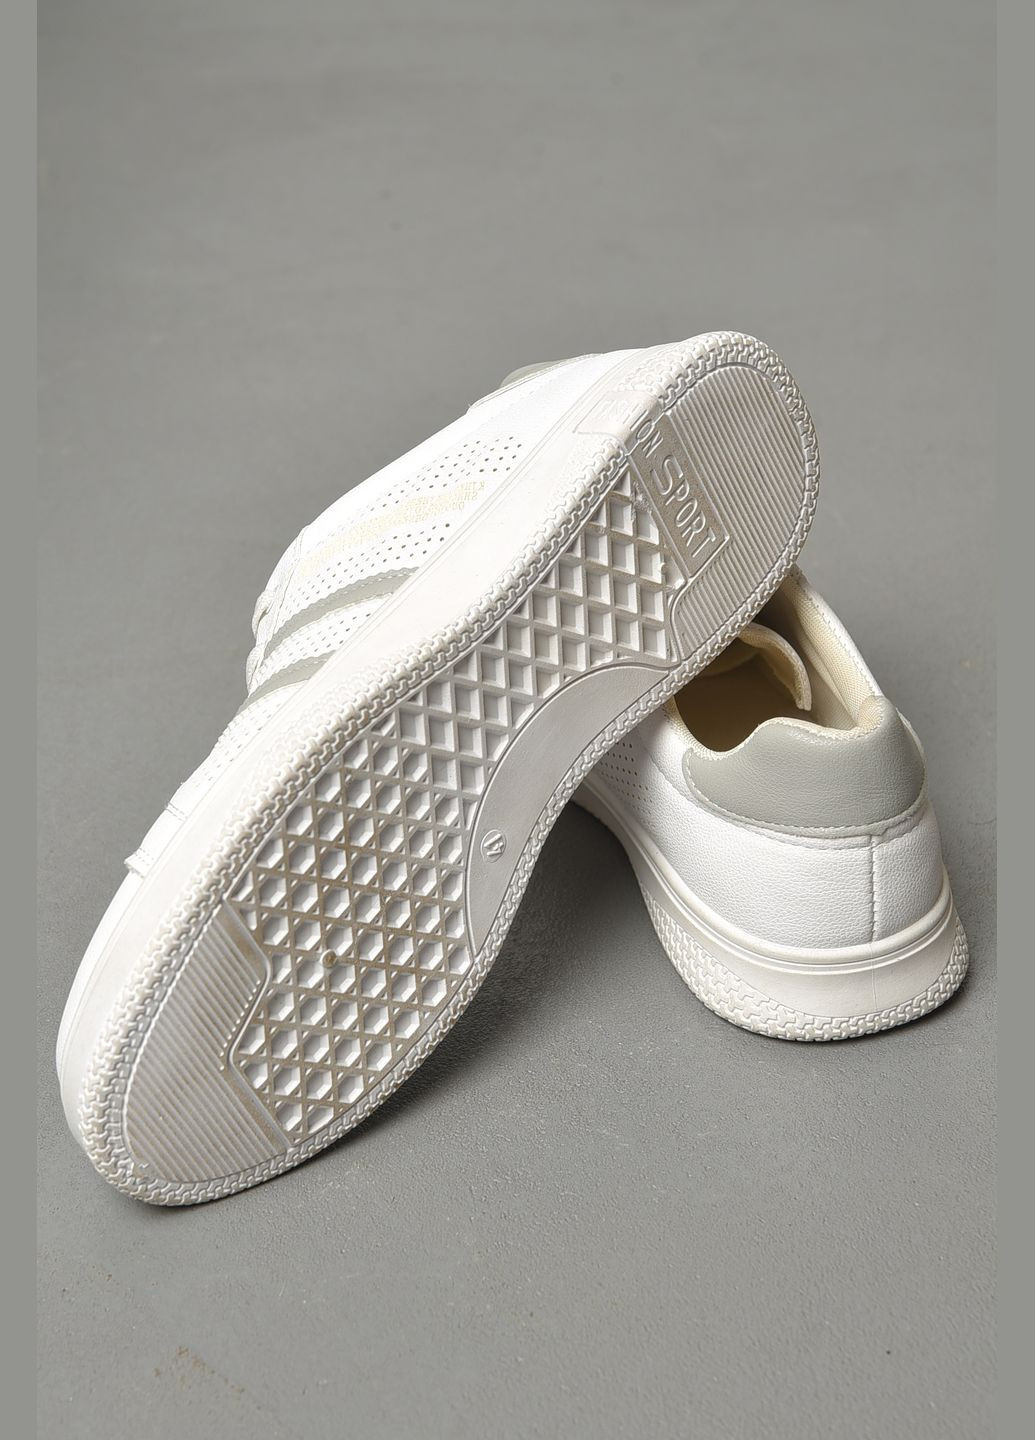 Белые демисезонные кроссовки женские белого цвета на шнуровке Let's Shop